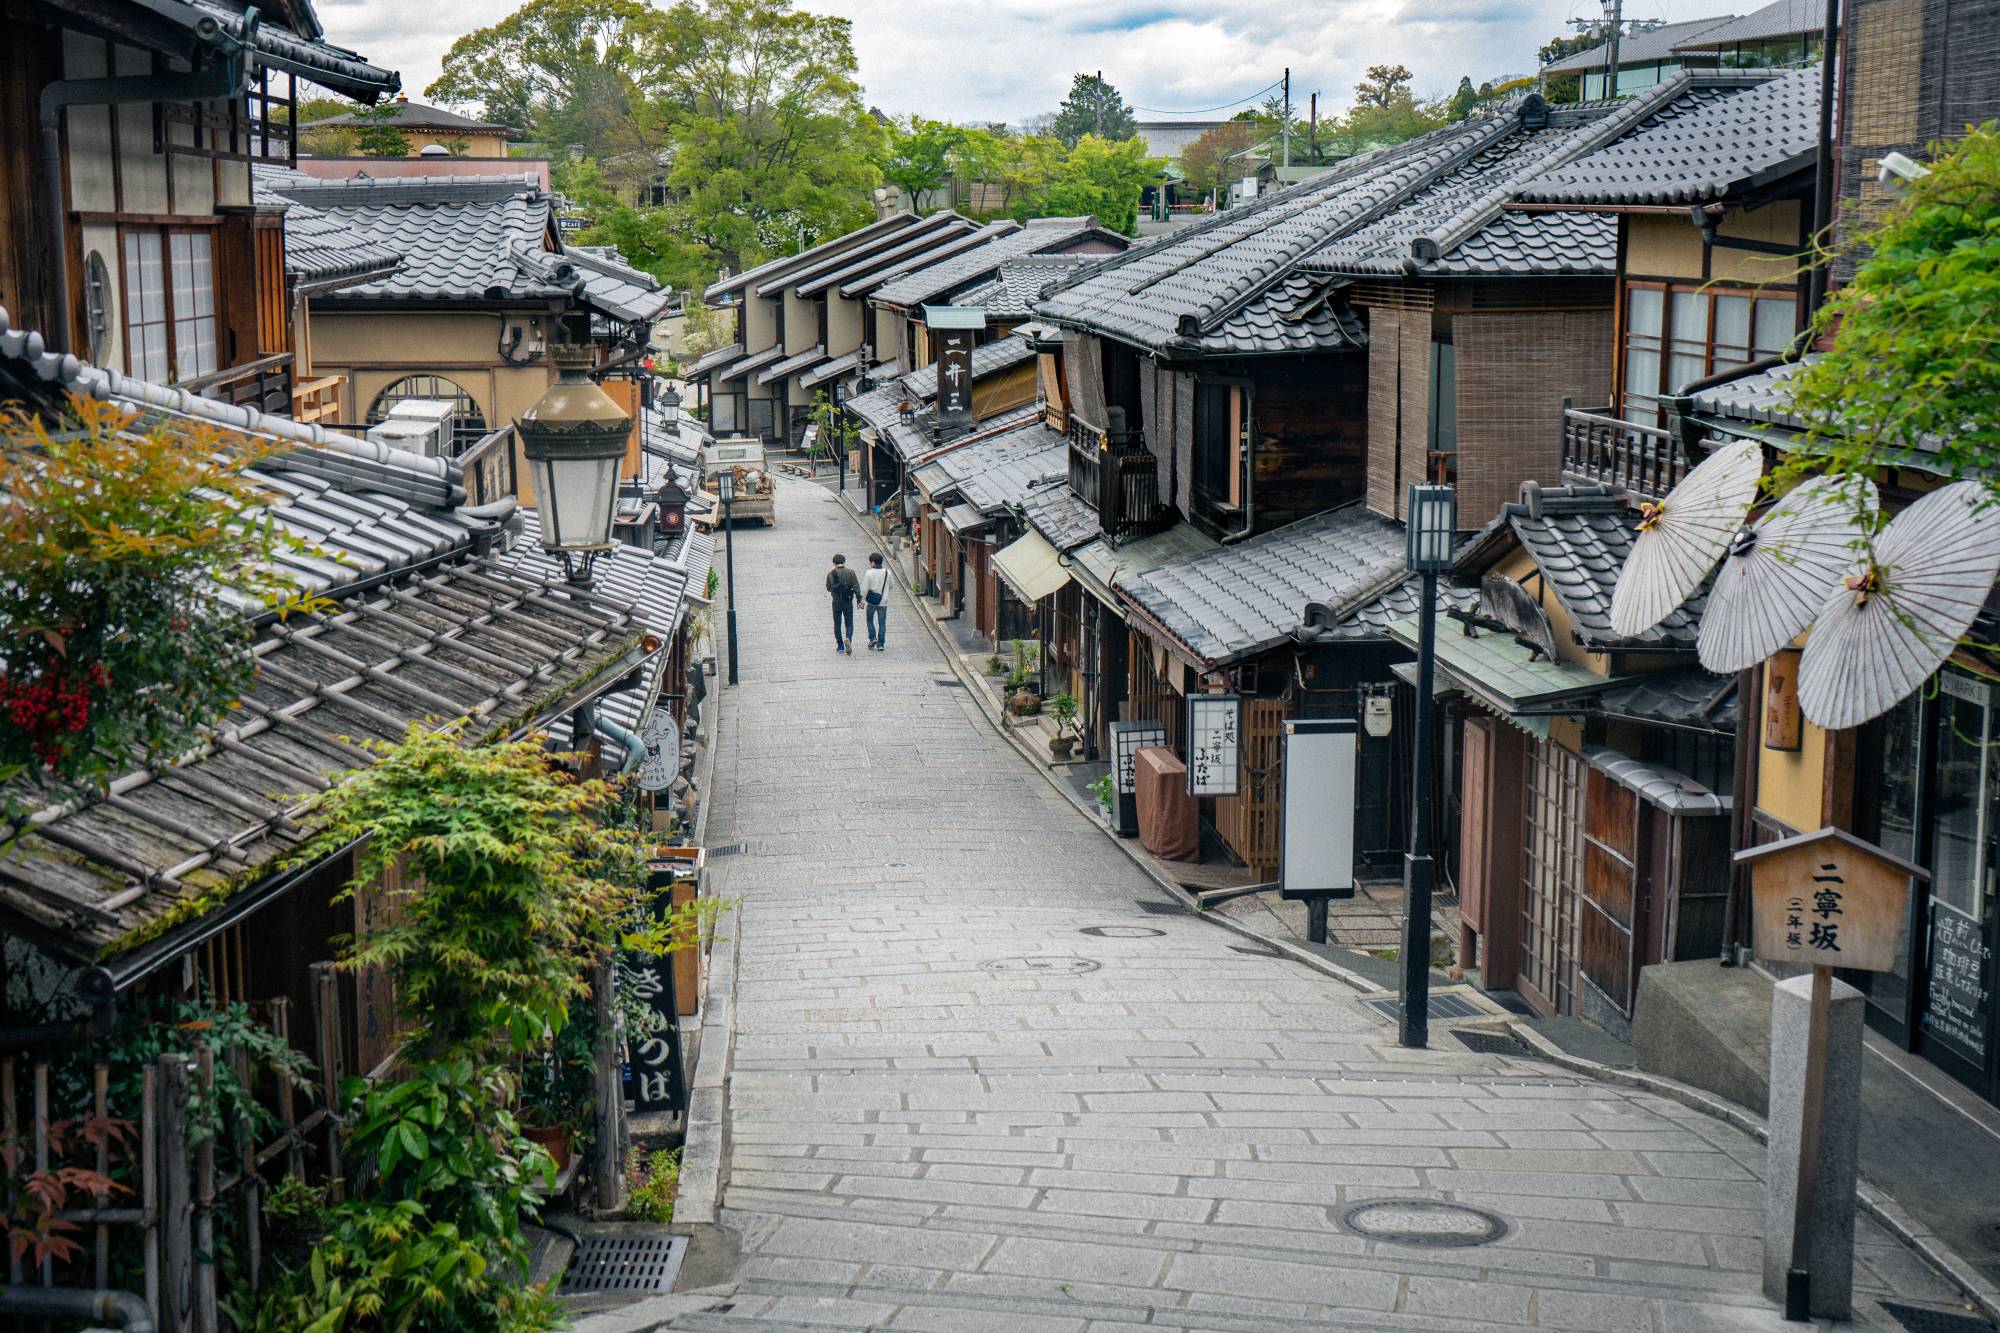 Mê mẩn hình ảnh yên bình của thành phố Kyoto, Nhật Bản những ngày vắng khách du lịch 3